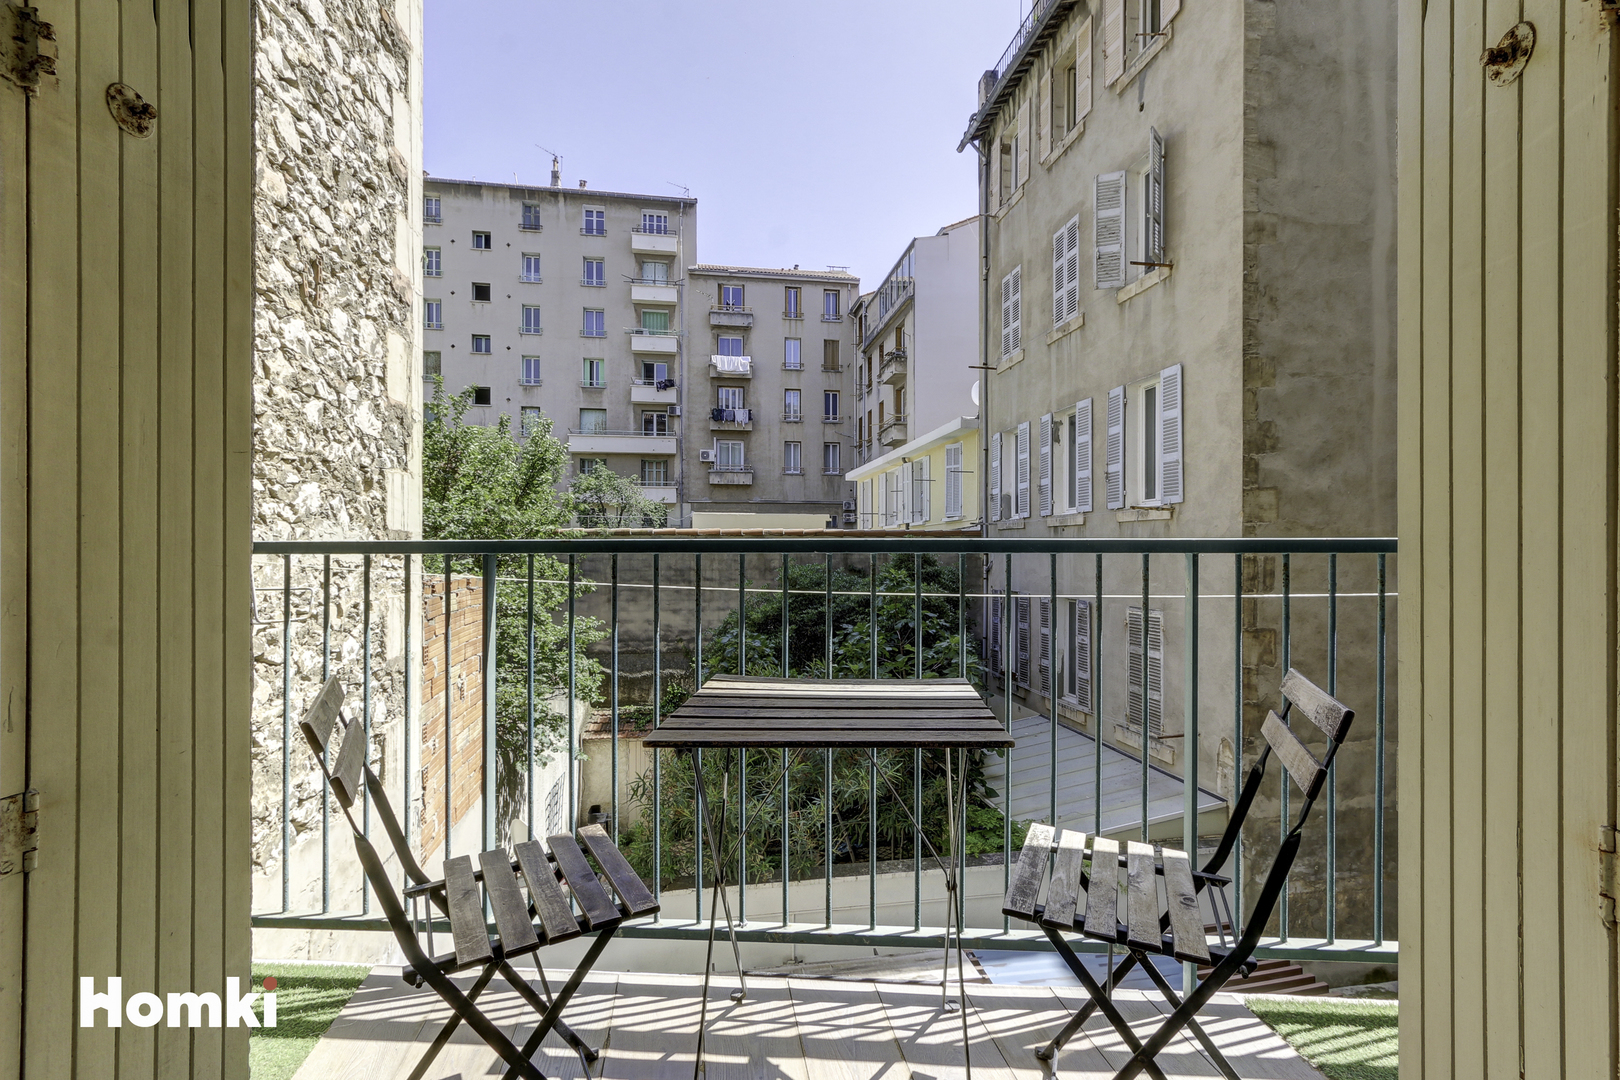 Homki - Vente Appartement  de 70.0 m² à Marseille 13007